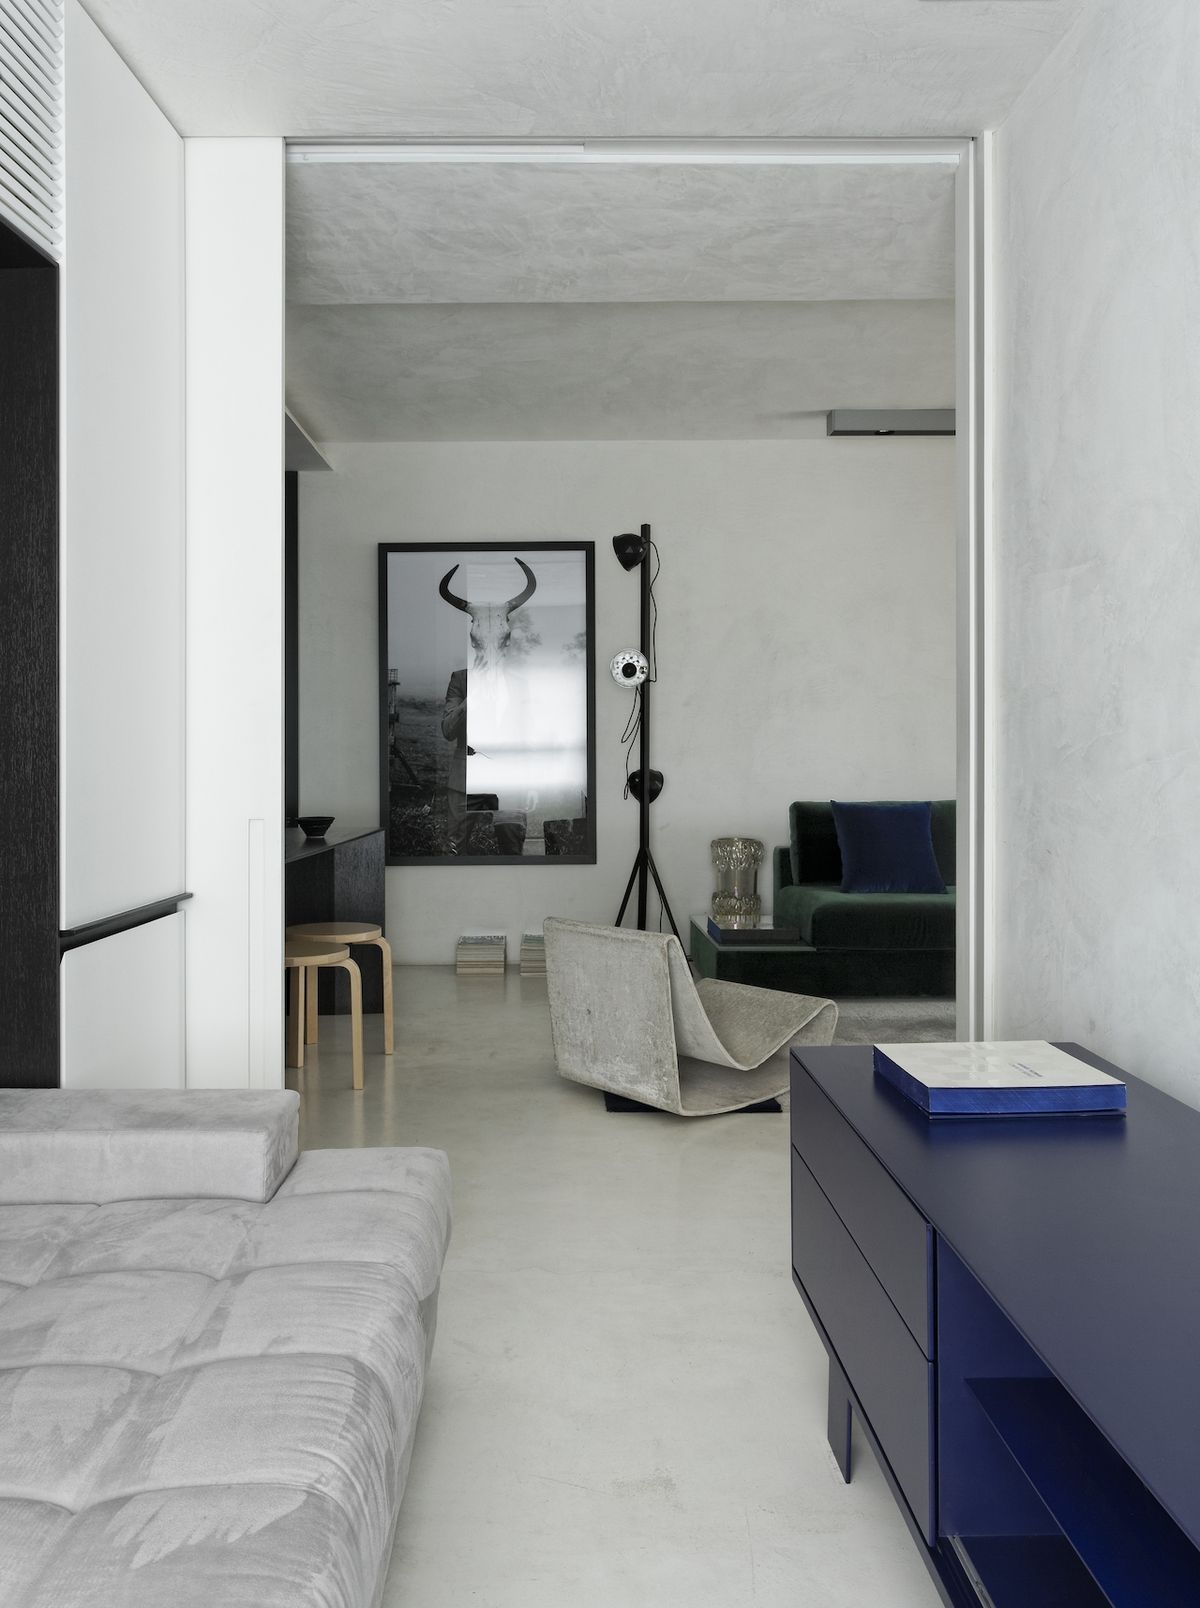 Modrá komoda má své barevné pokračování v obývacím pokoji. Na podlaze a na gauči.